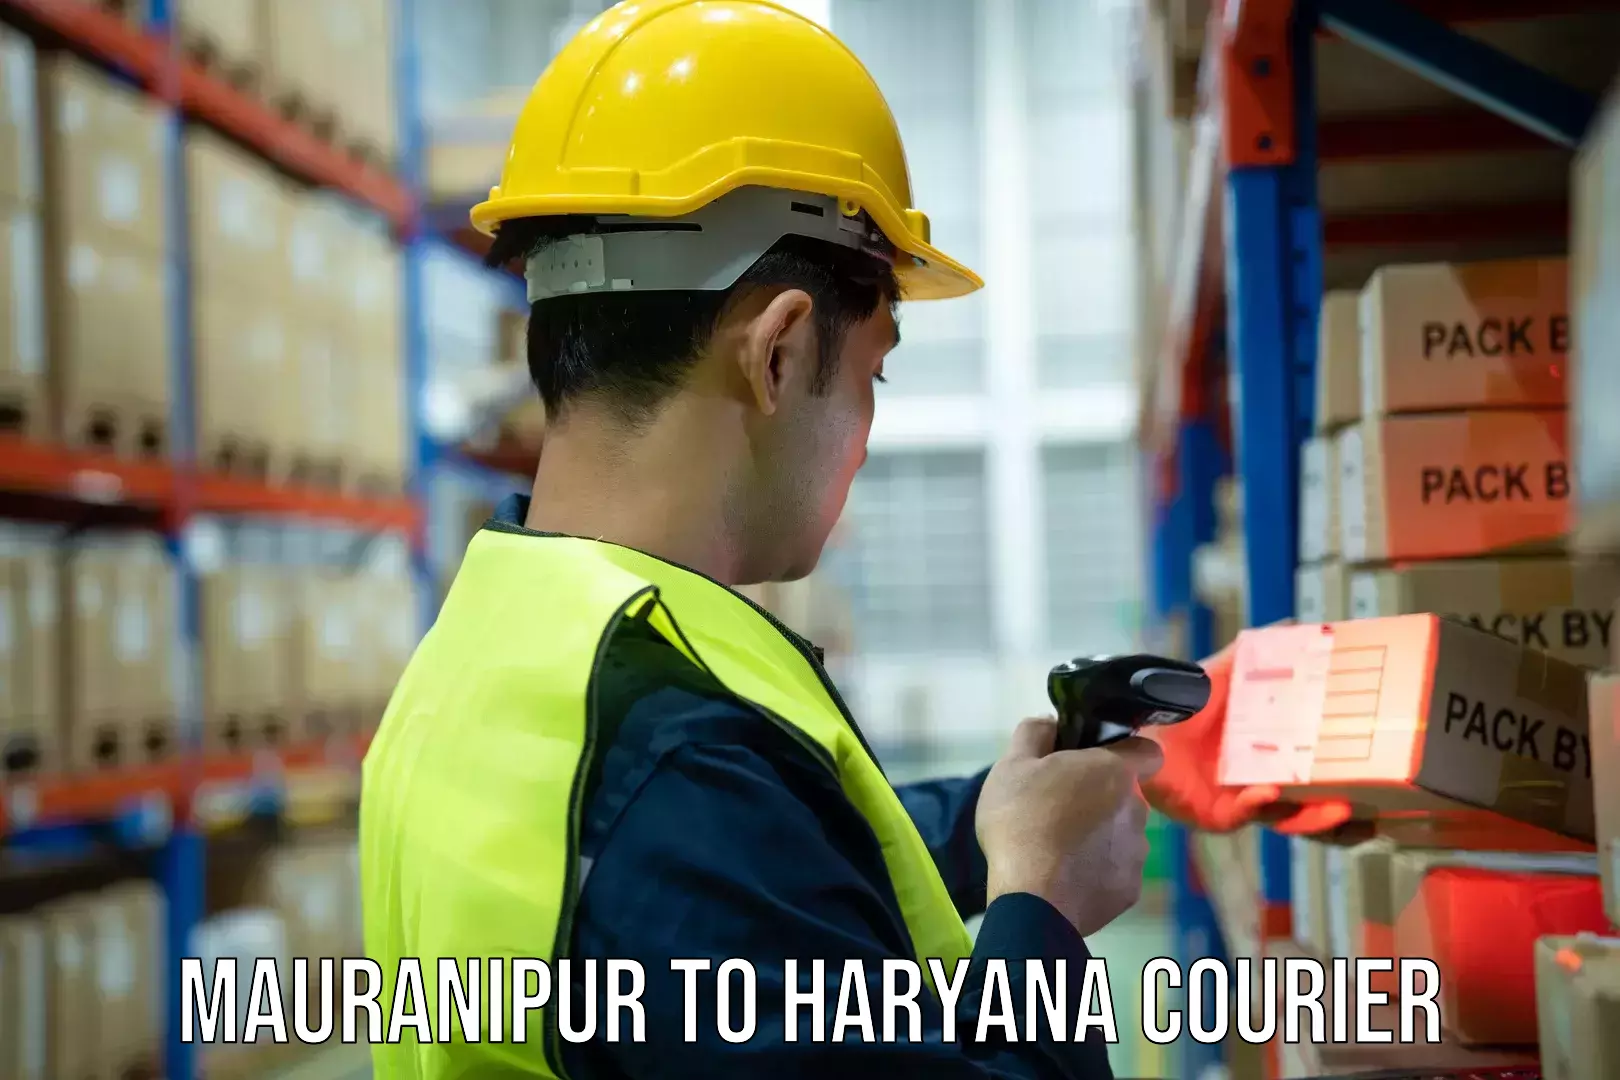 Courier app Mauranipur to Kurukshetra